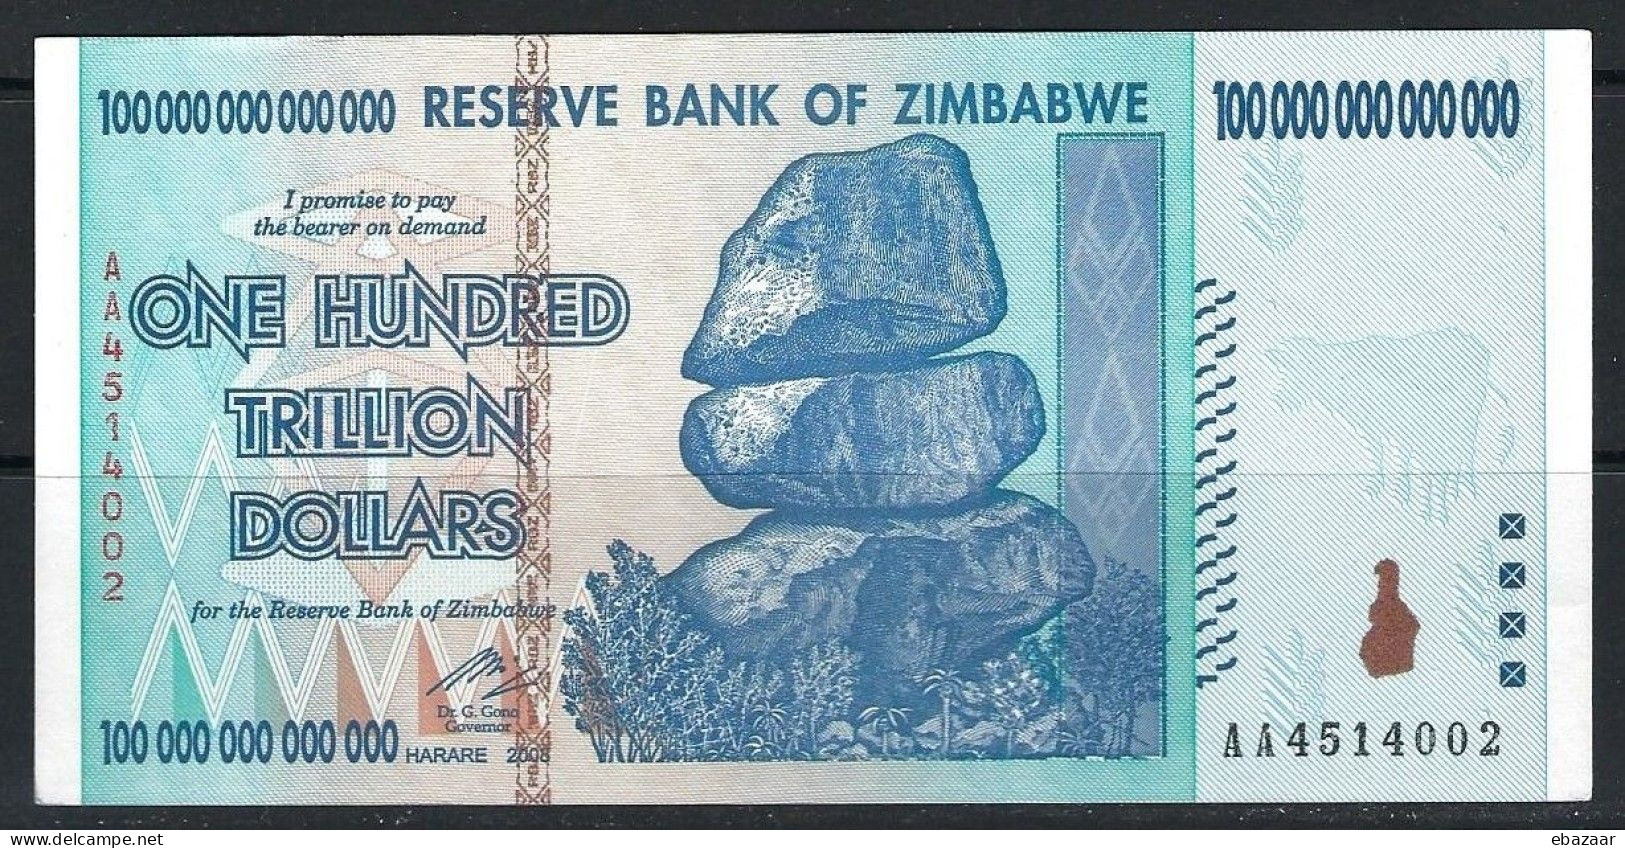 Zimbabwe 2008 Banknote 100 TRILLION Dollars ($100.000.000.000.000) P-91 AUNC - Simbabwe